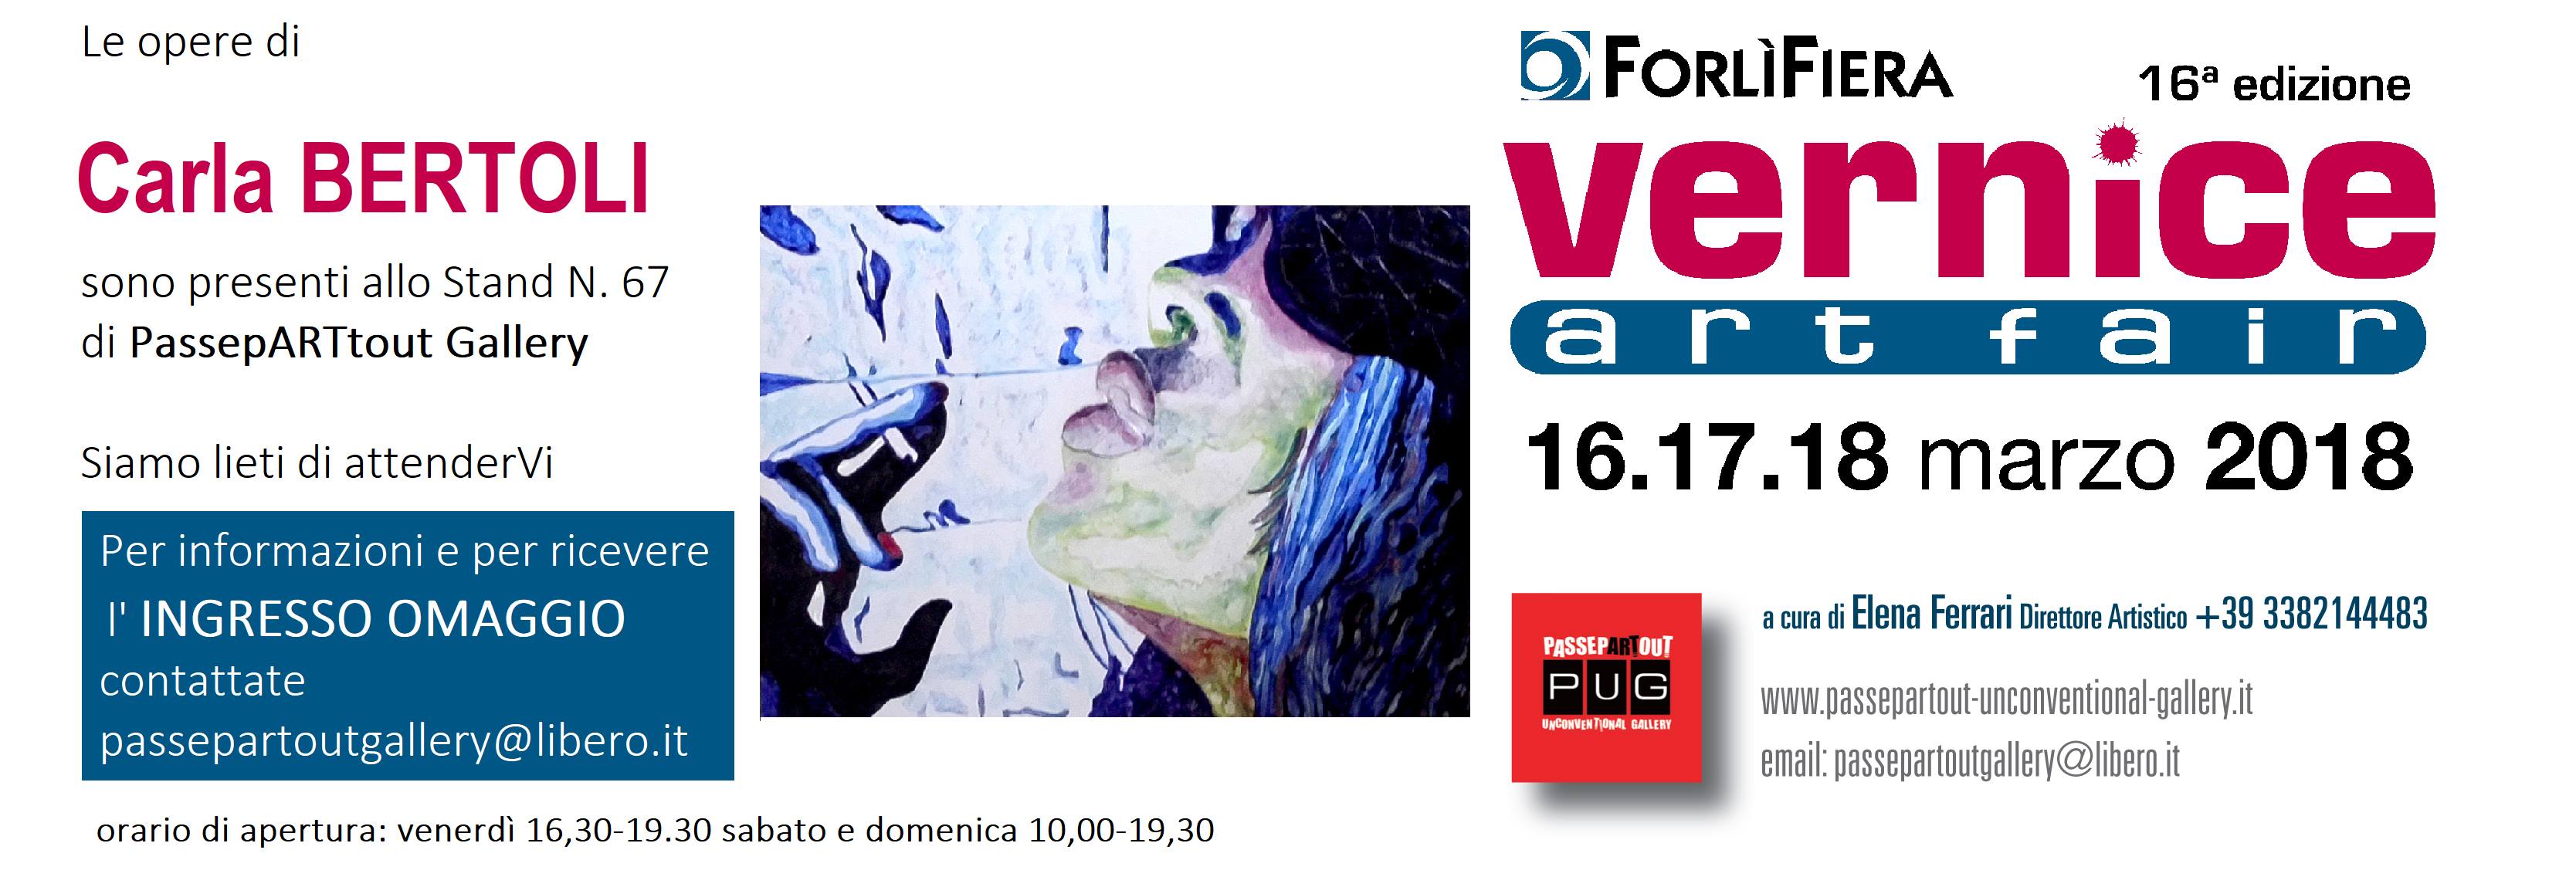 Vernice Art Fair 16ma edizione (ForlìFiera) - Forlì  - Anno 2018